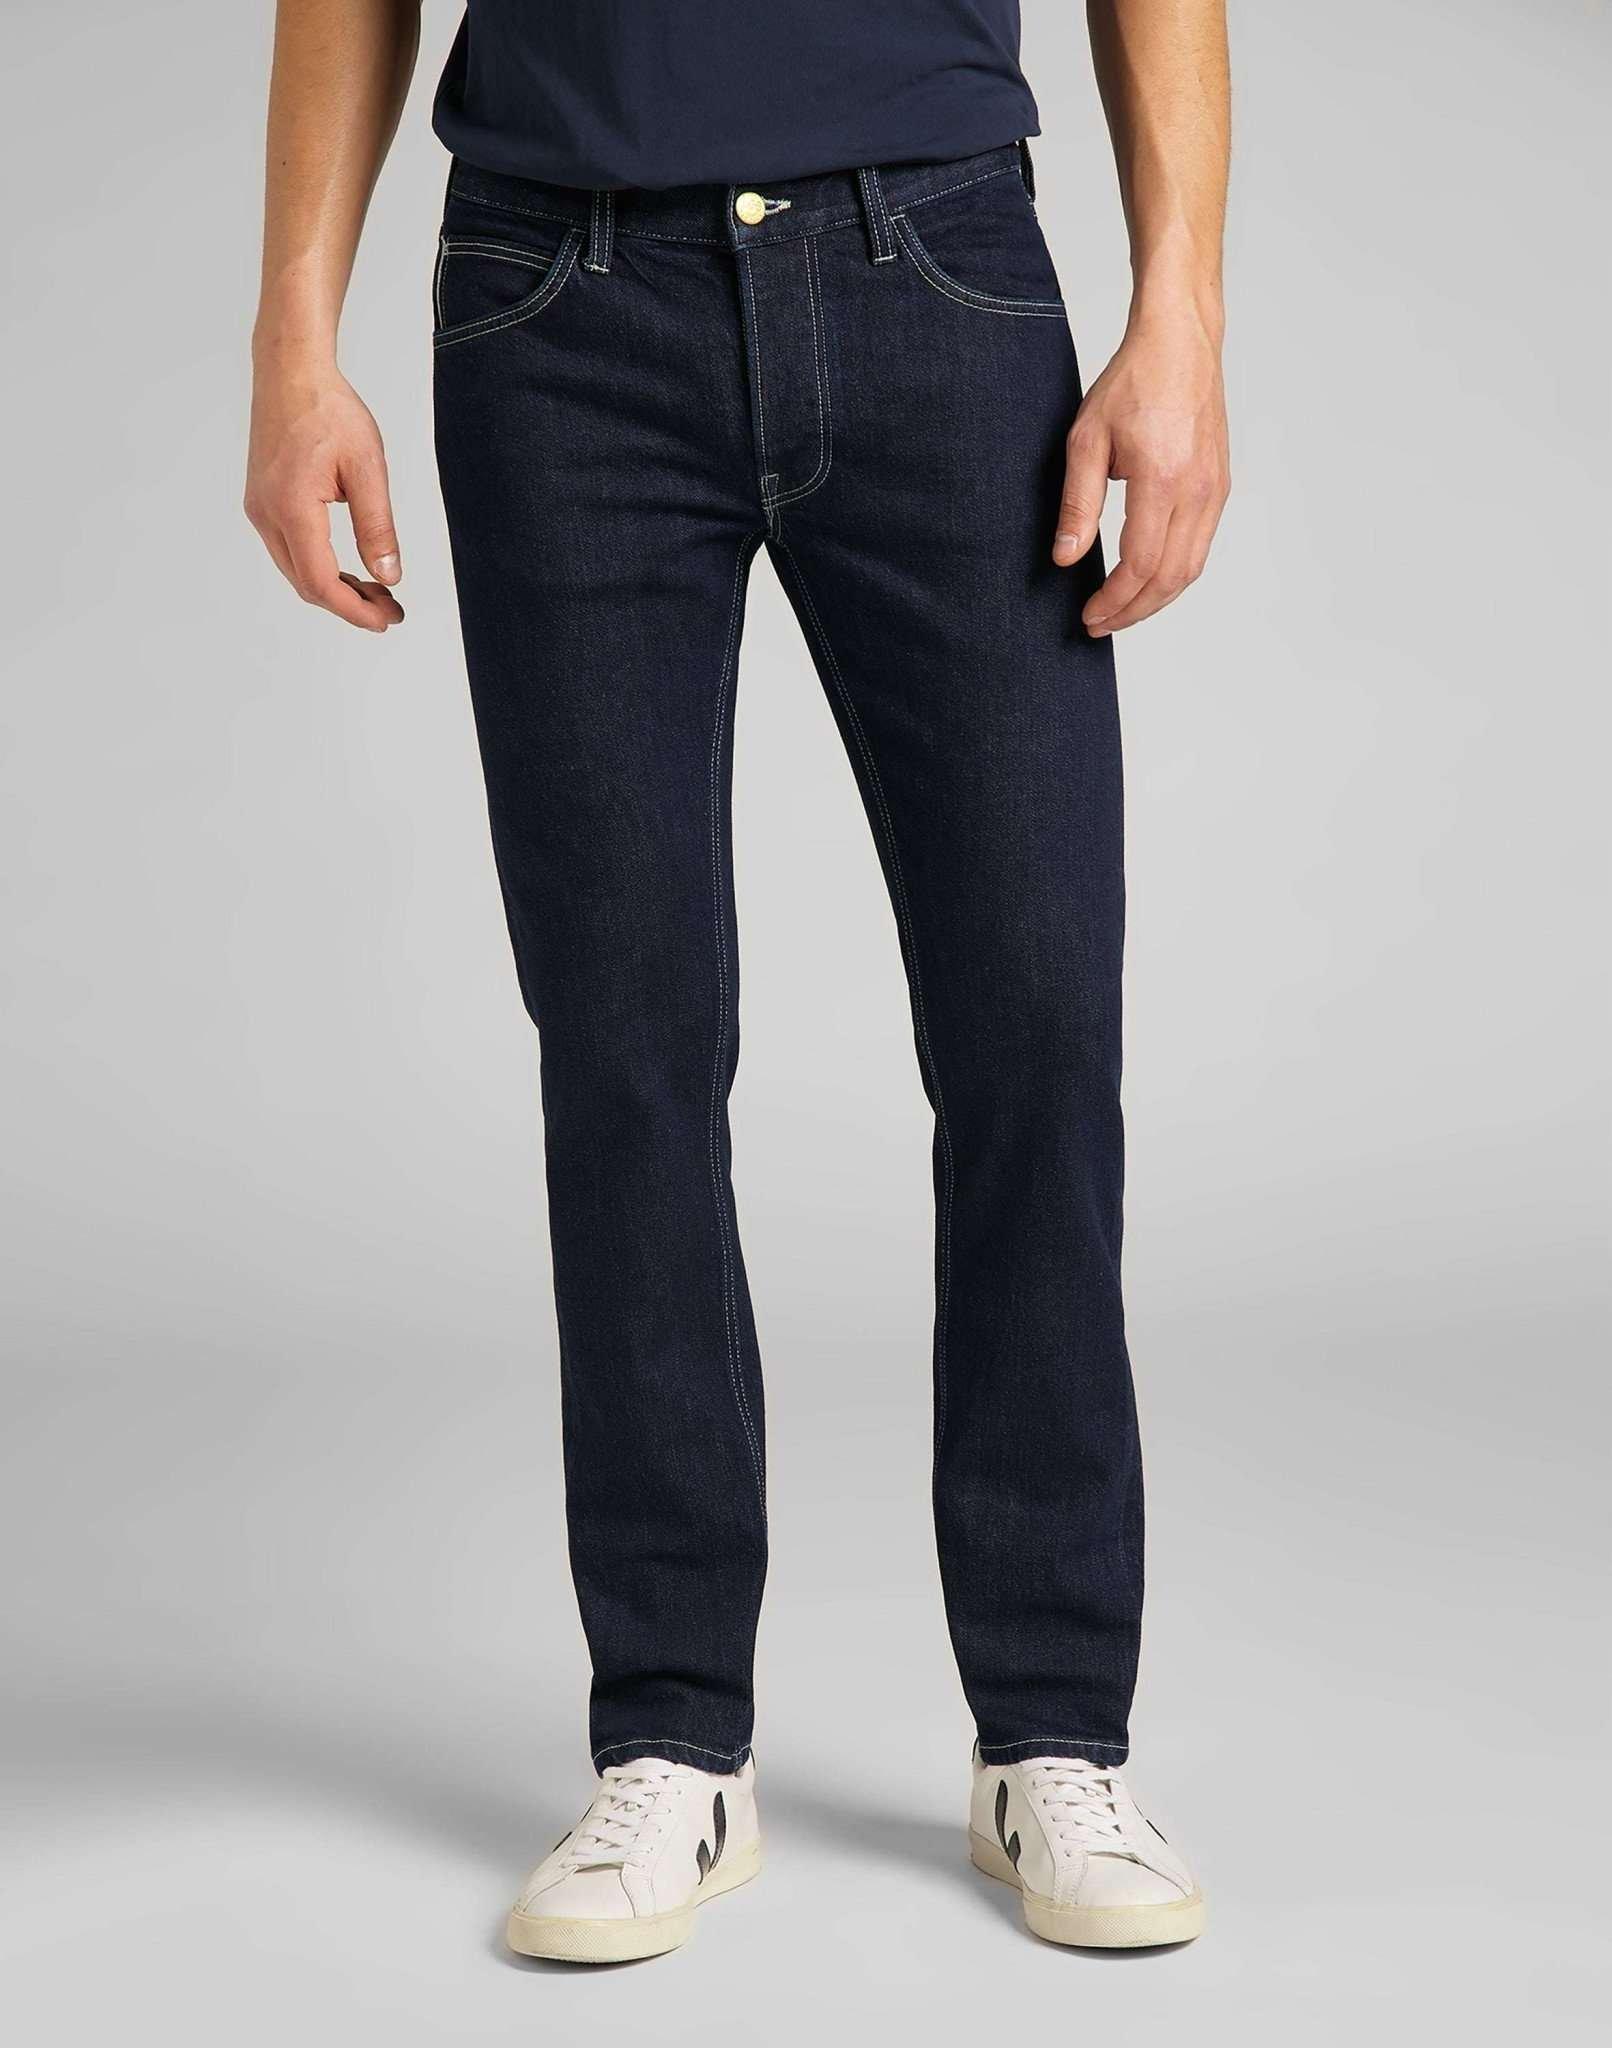 Jeans Slim Fit Luke Herren Blau Denim L32/W32 von Lee